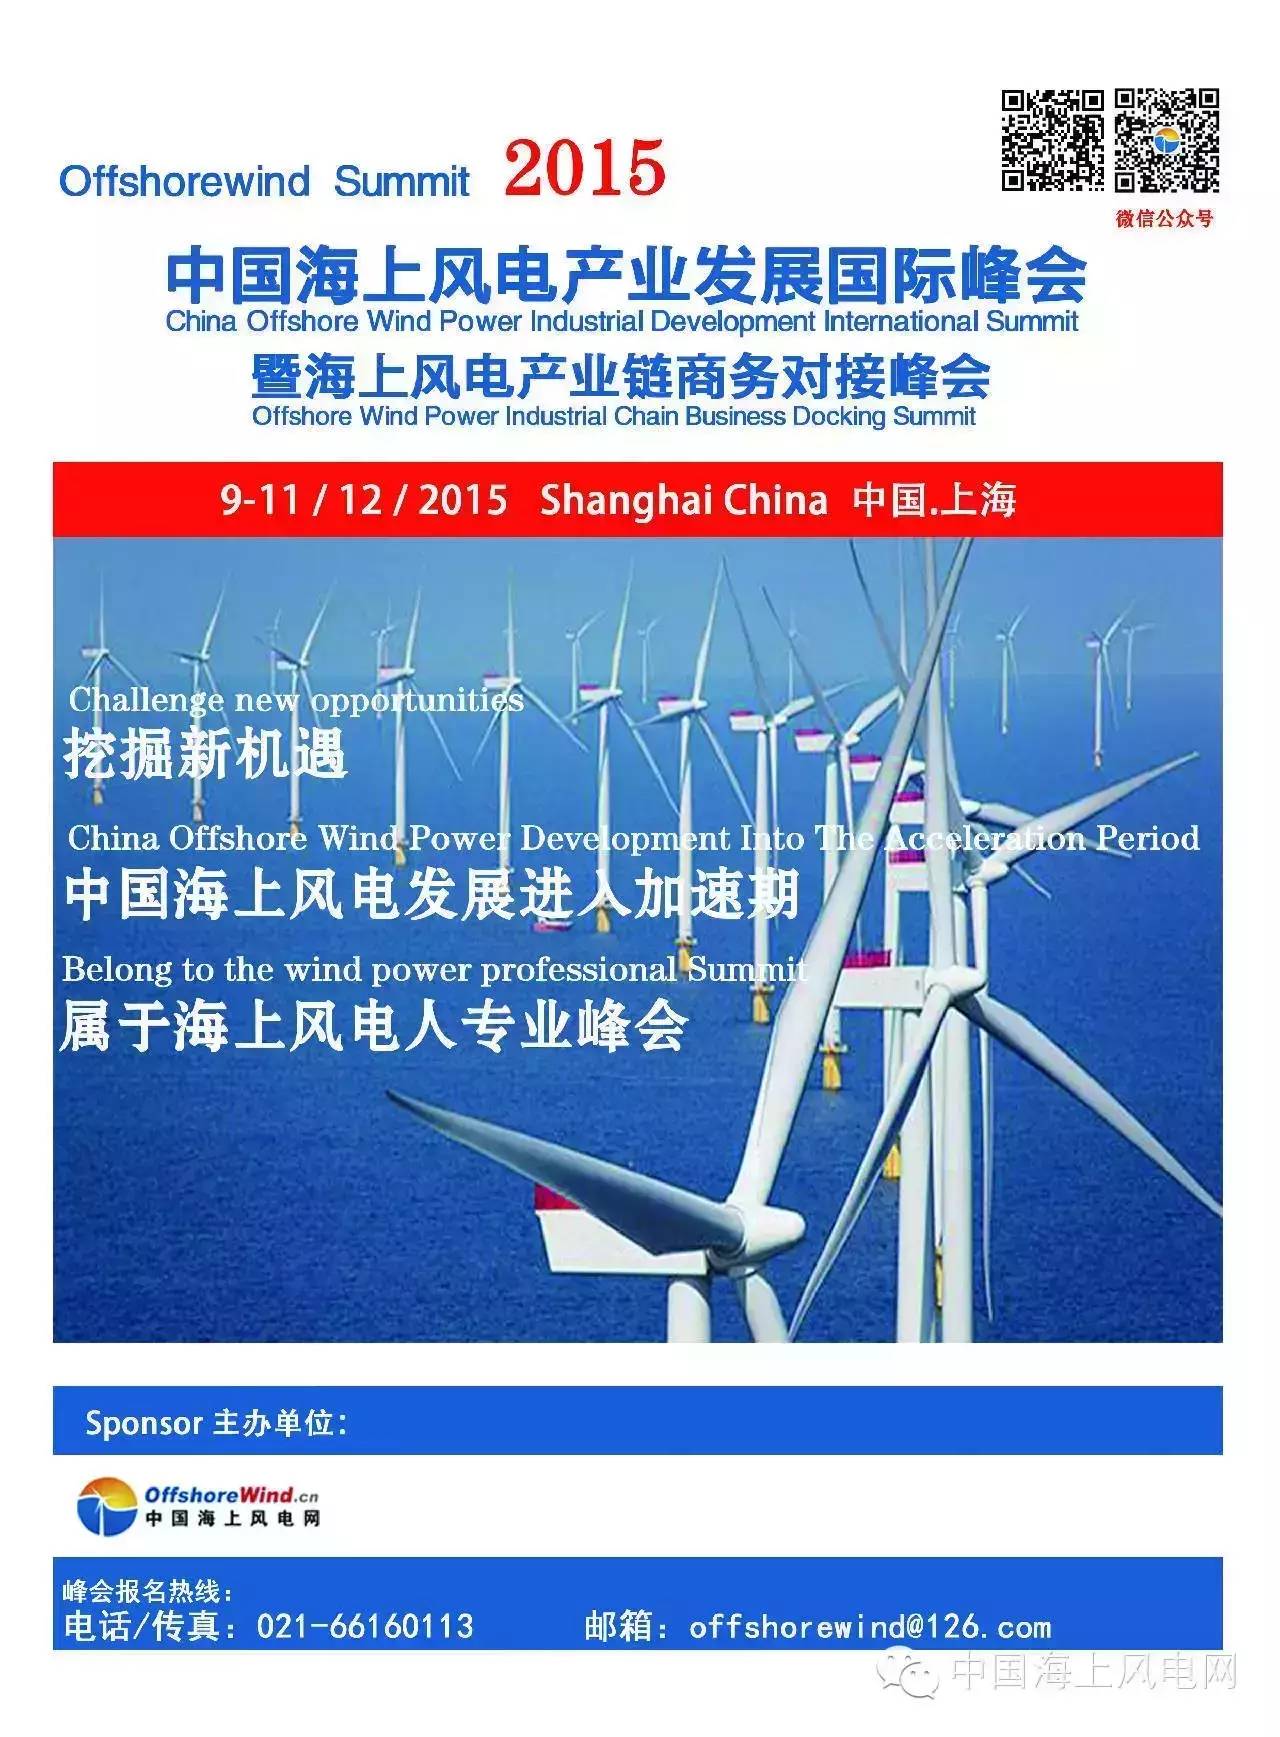 中国海上风电产业发展国际峰会 暨海上风电产业链商务对接峰会